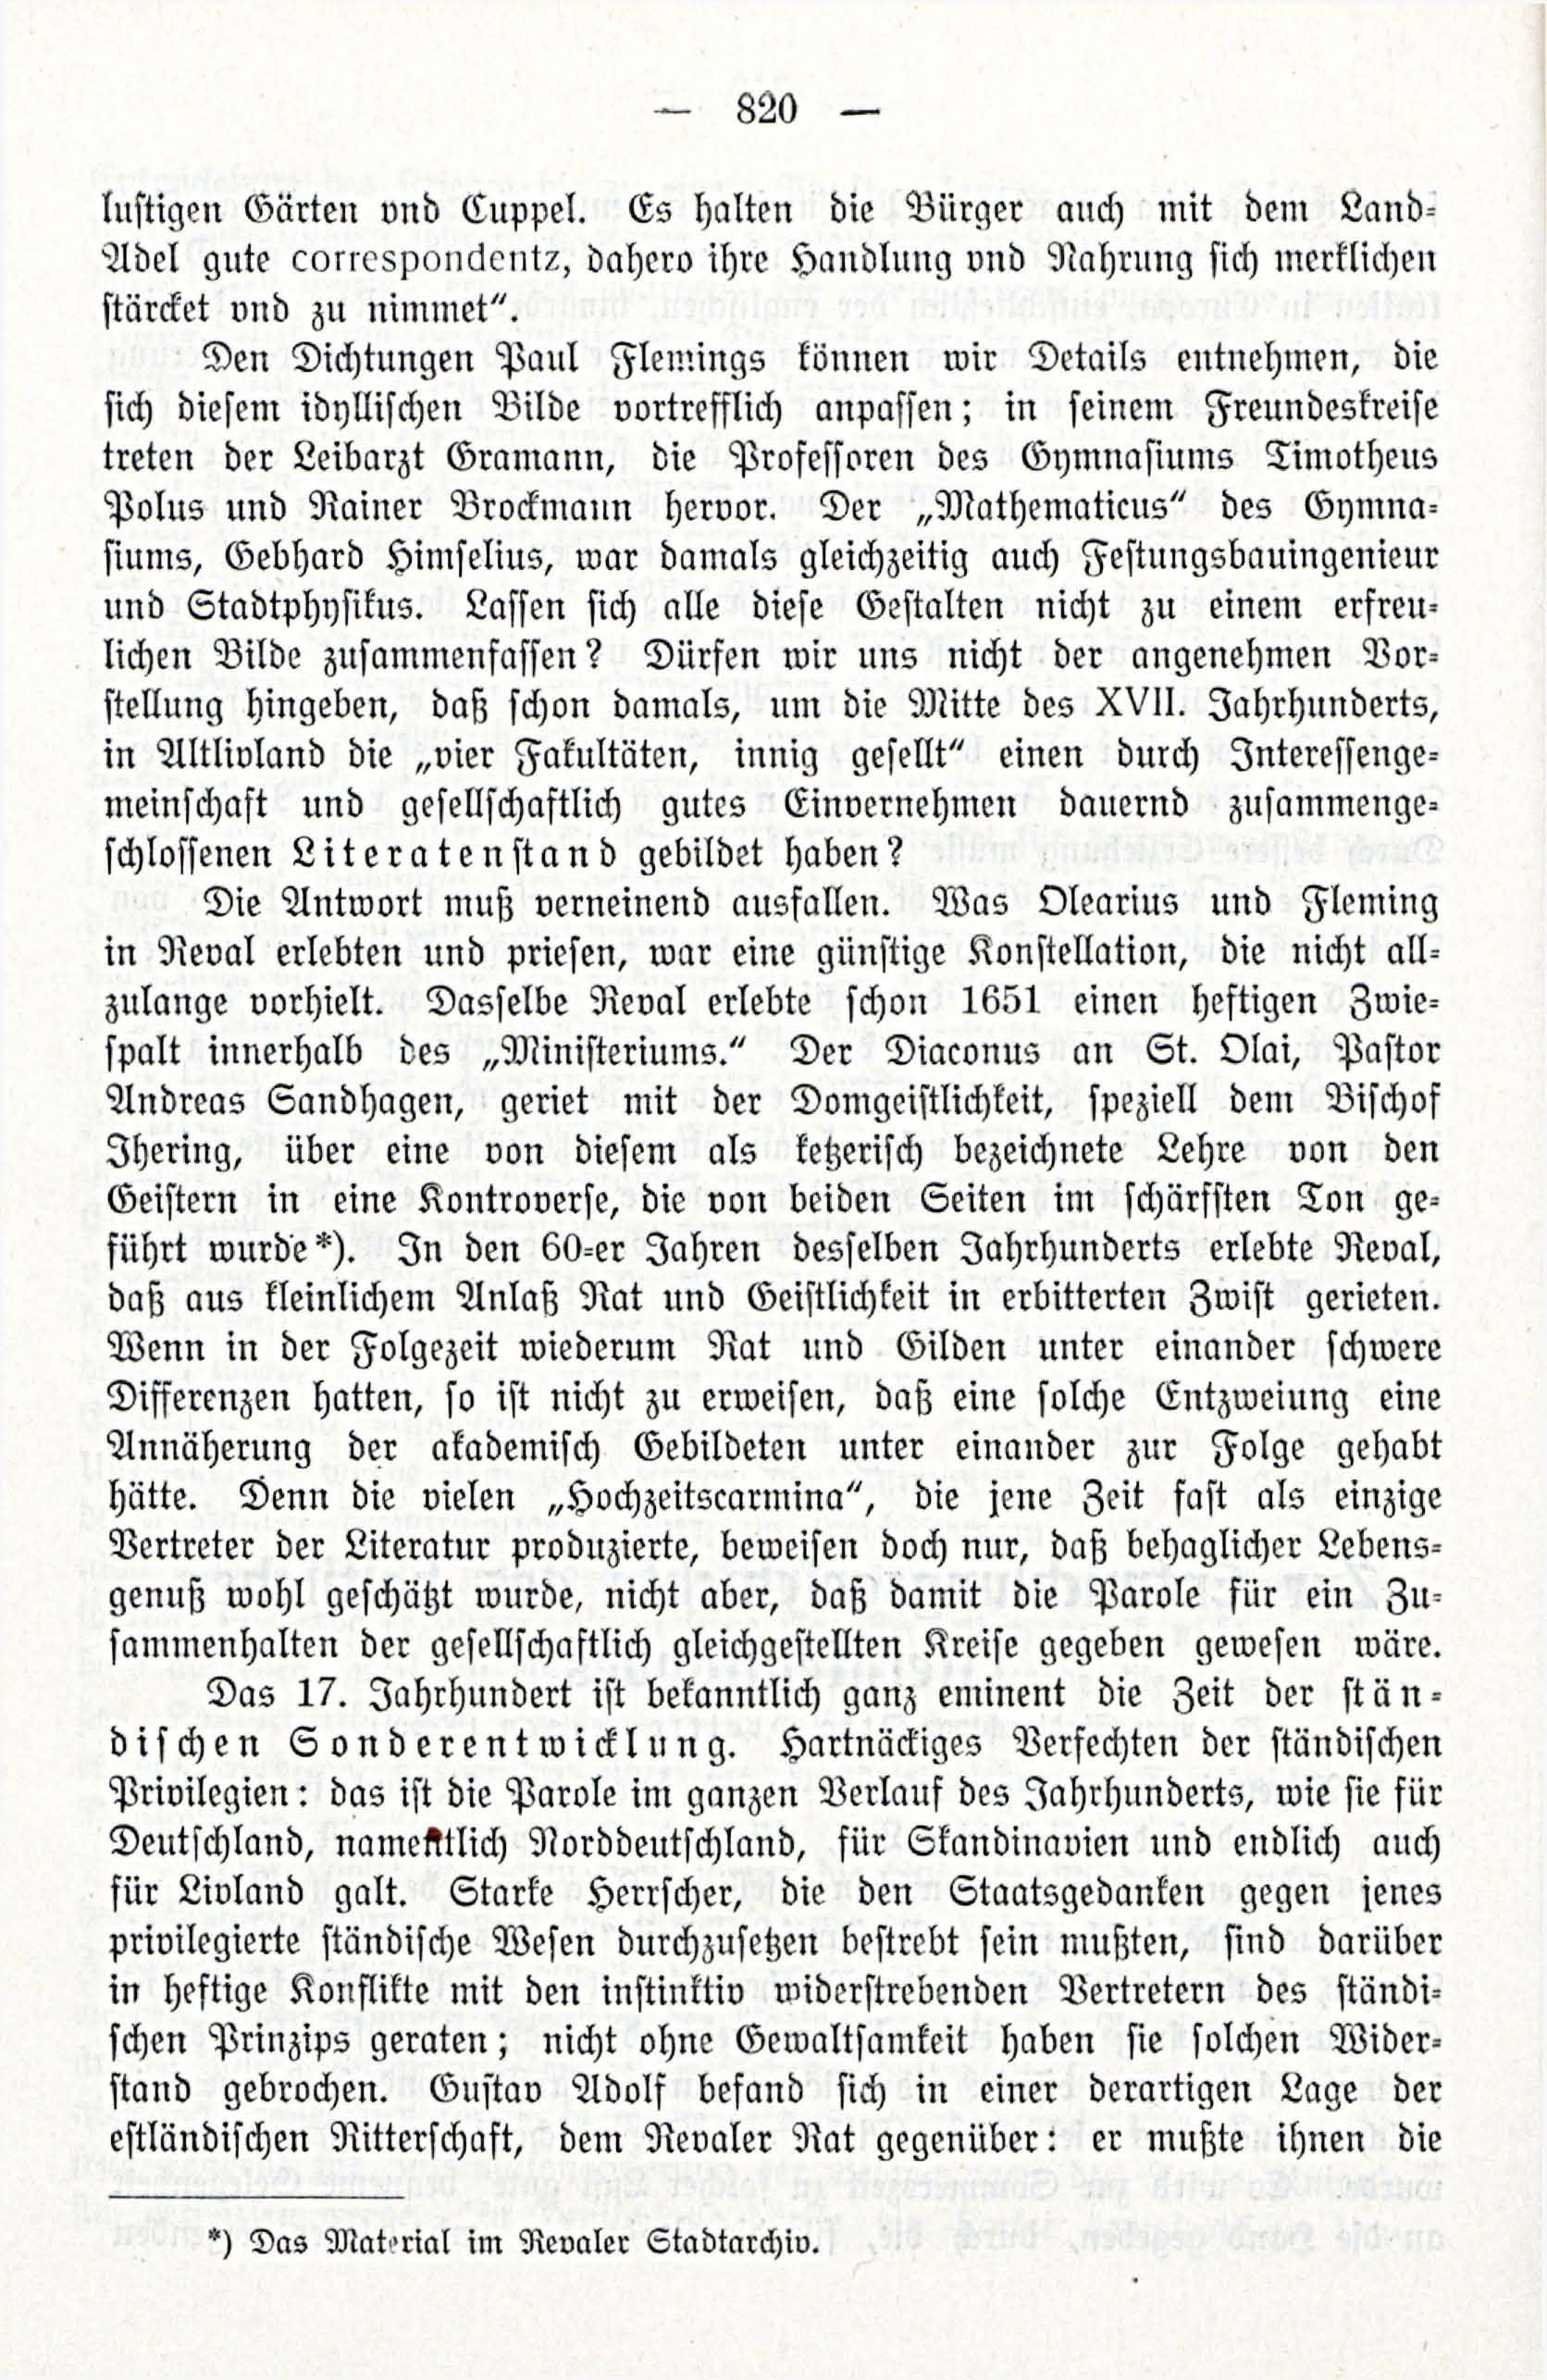 Zur Entwicklungesgescshichte des baltischen Literatenstandes (1914) | 2. (820) Main body of text